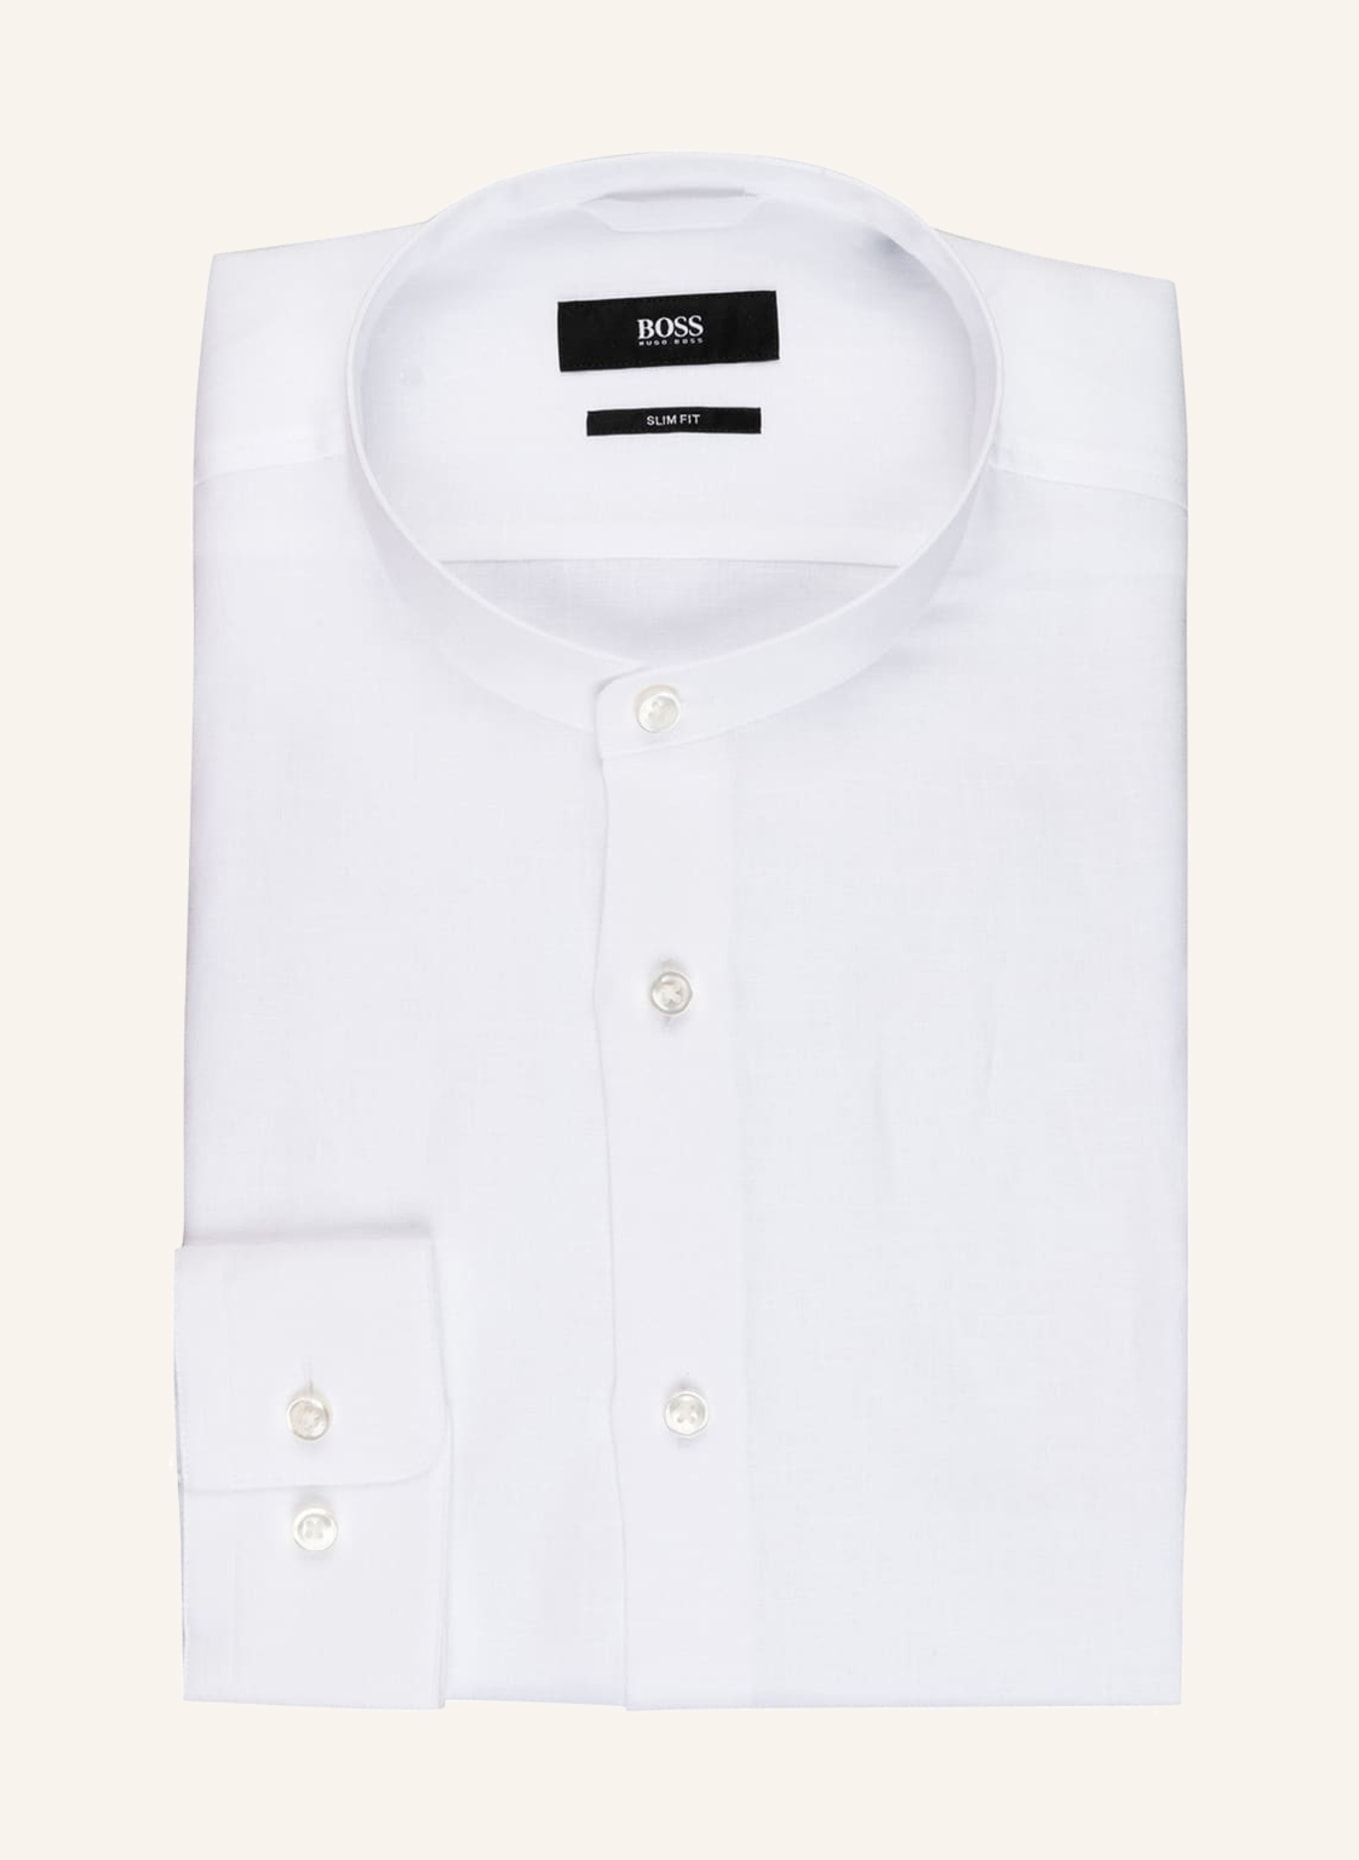 BOSS Leinenhemd JORDIN Slim Fit mit Stehkragen, Farbe: WEISS (Bild 1)